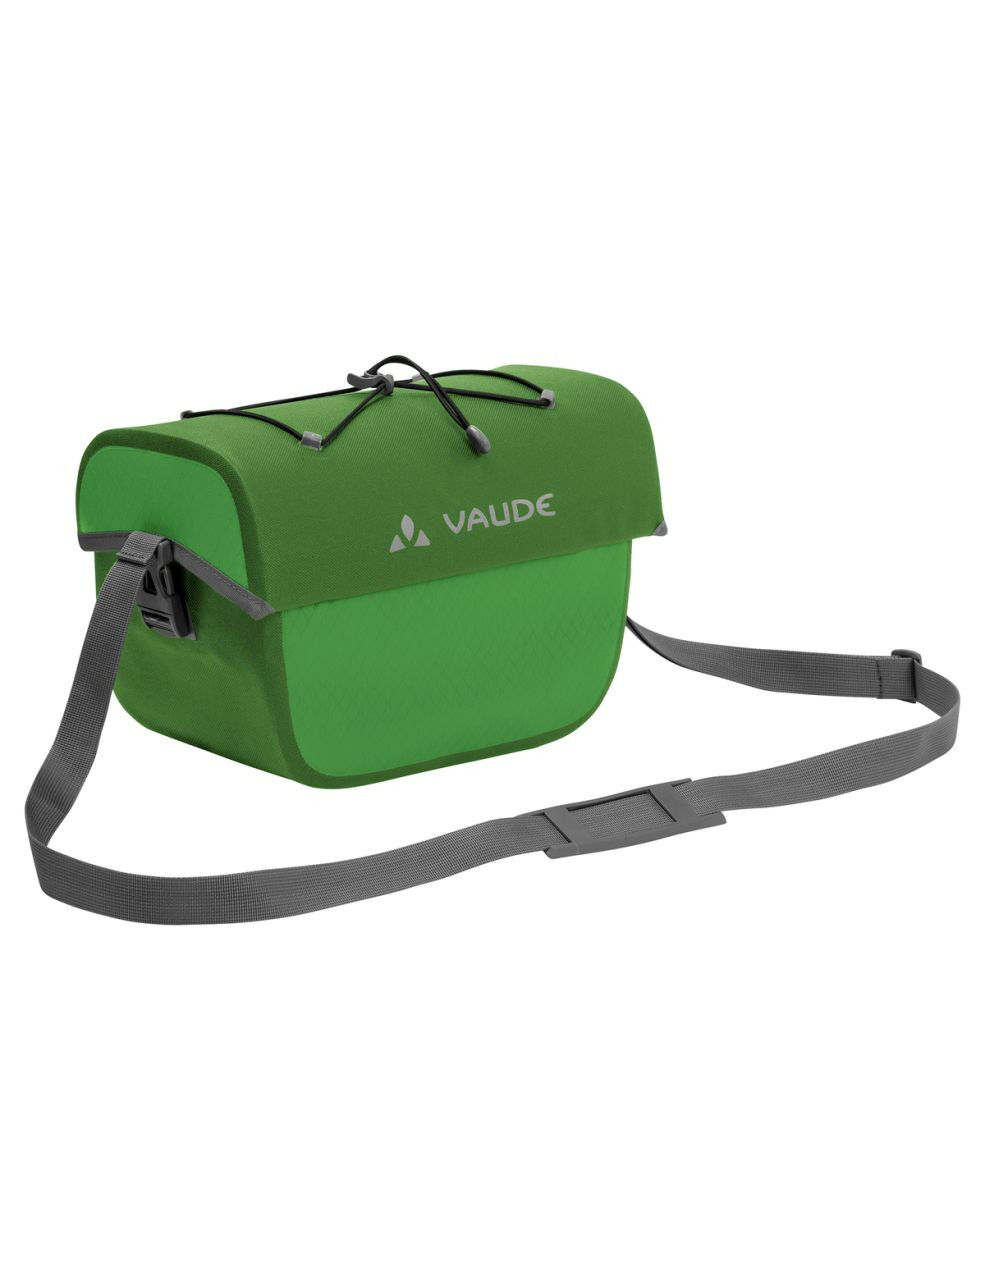 Vaude - Aqua Box - Cycling bag